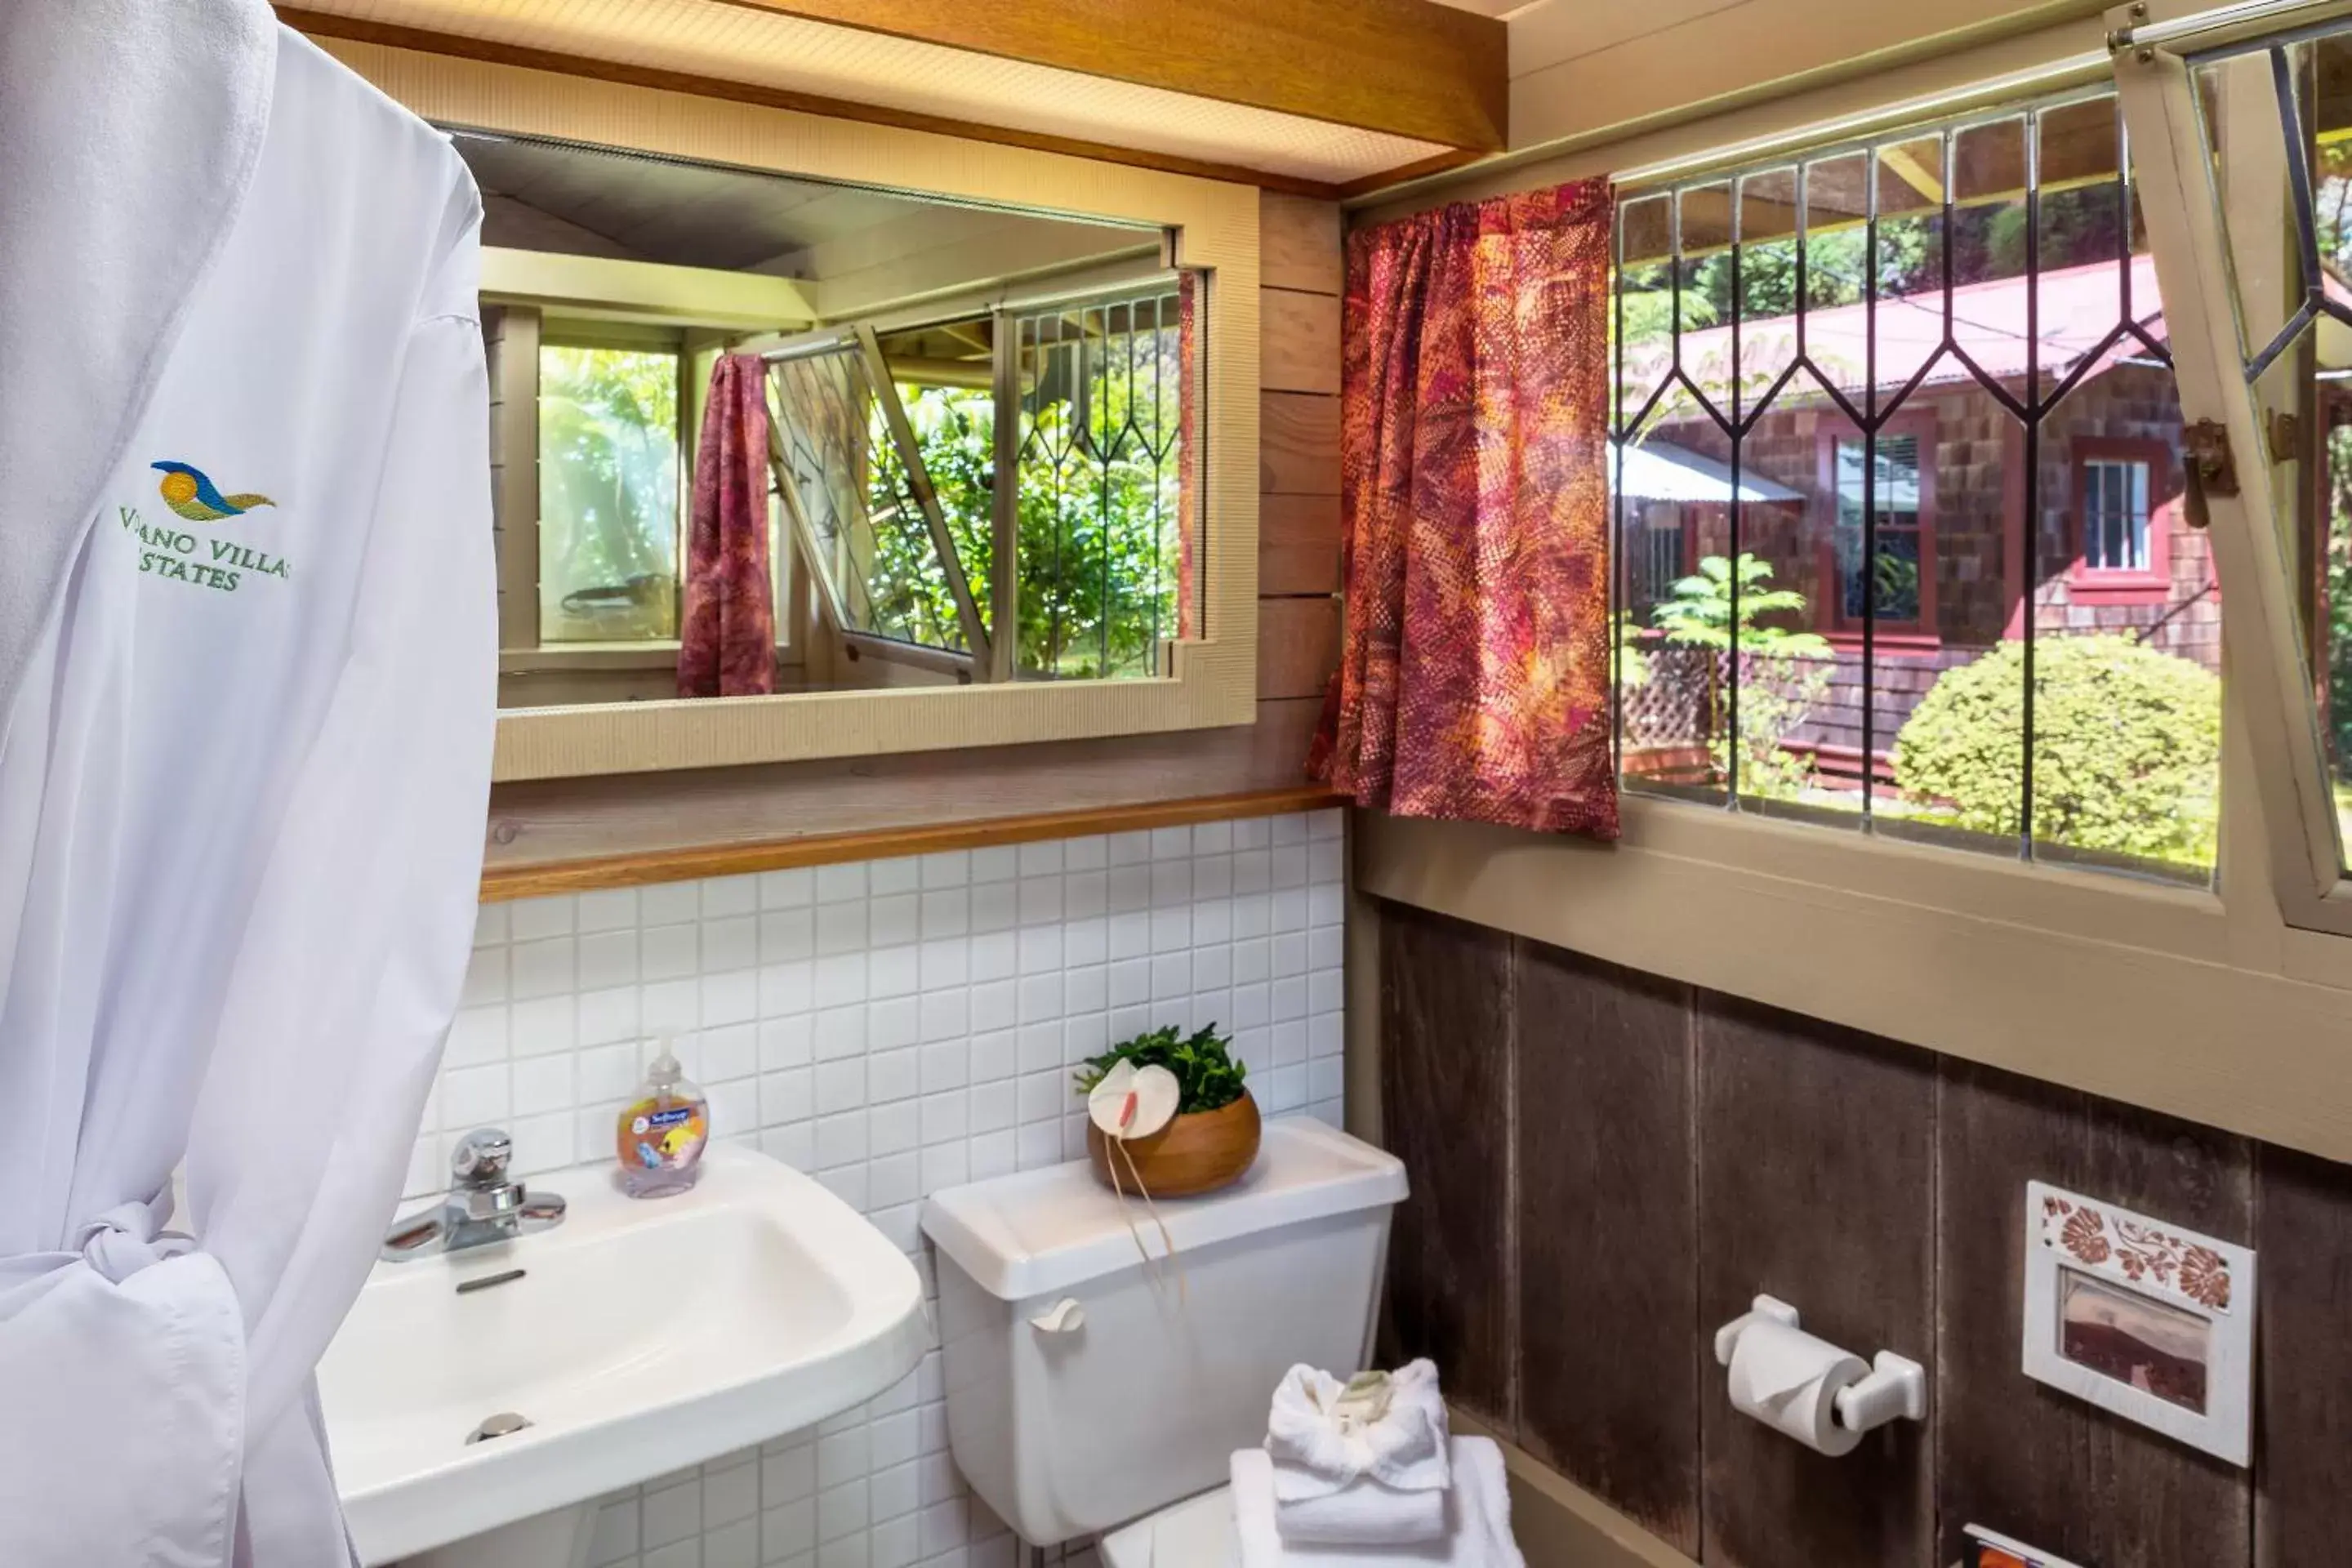 Bathroom in Volcano Village Estates